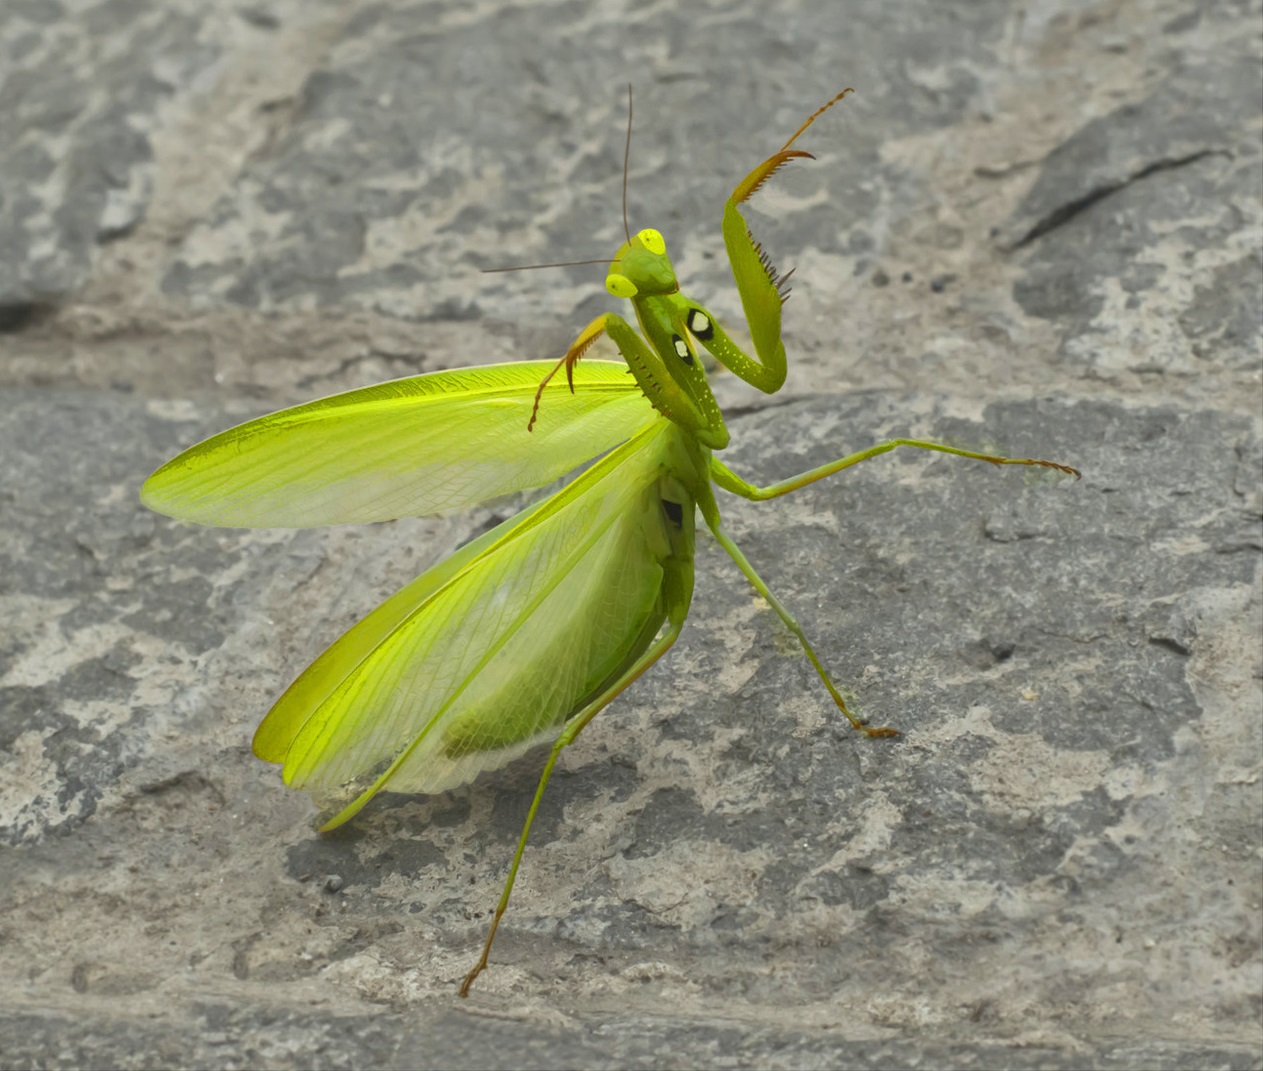 Fivavahana tsotra na mpivavaka mantis (lat. Mantis religiosa)